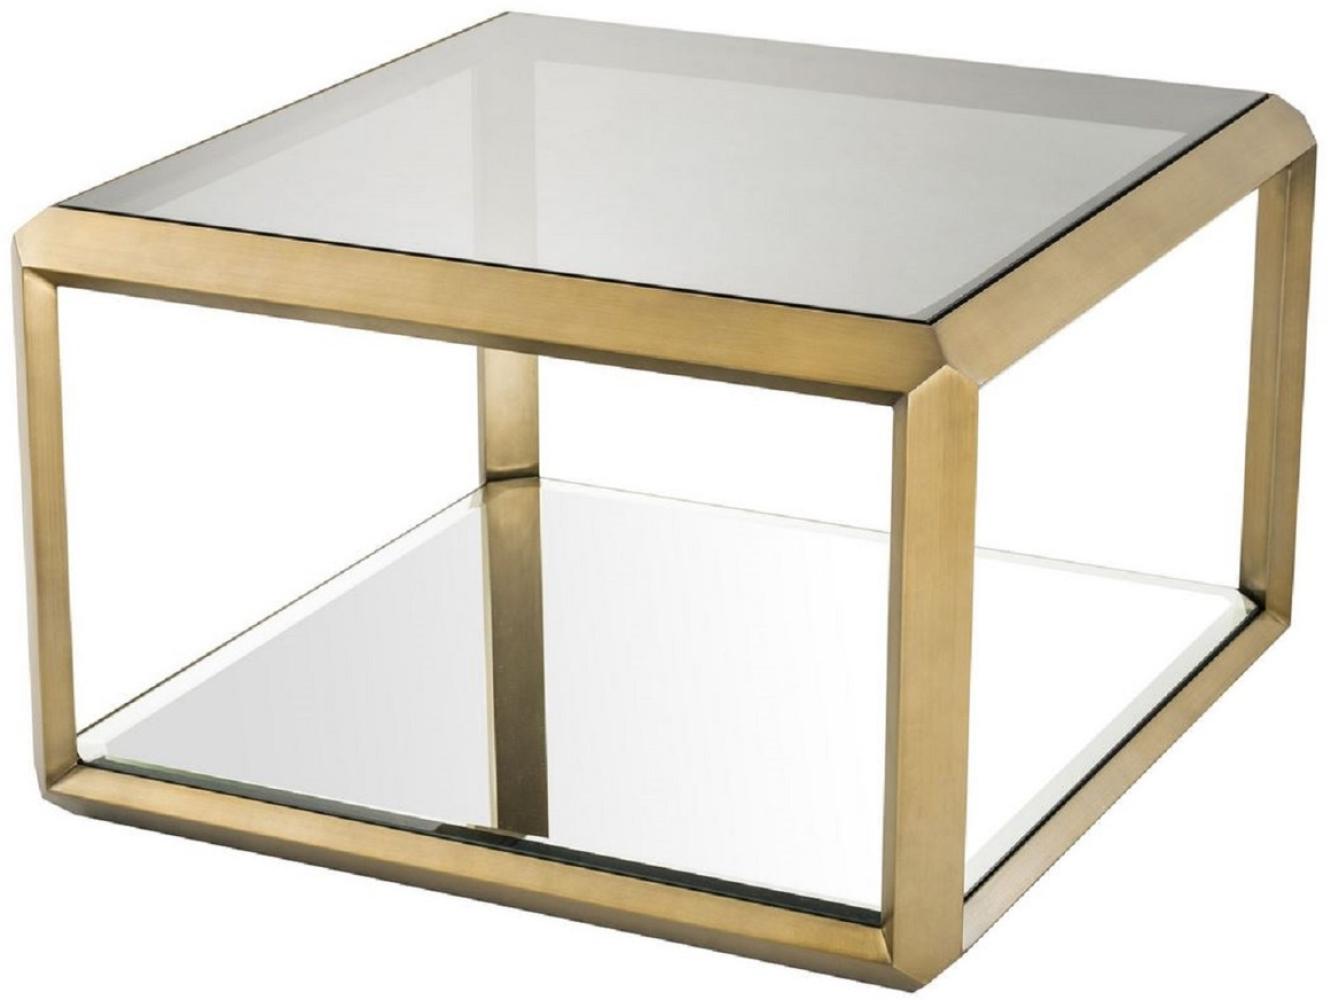 Casa Padrino Luxus Beistelltisch Messingfarben / Schwarz 75 x 75 x H. 55 cm - Edelstahl Tisch mit Glasplatte und Spiegelglas - Luxus Wohnzimmer Möbel Bild 1